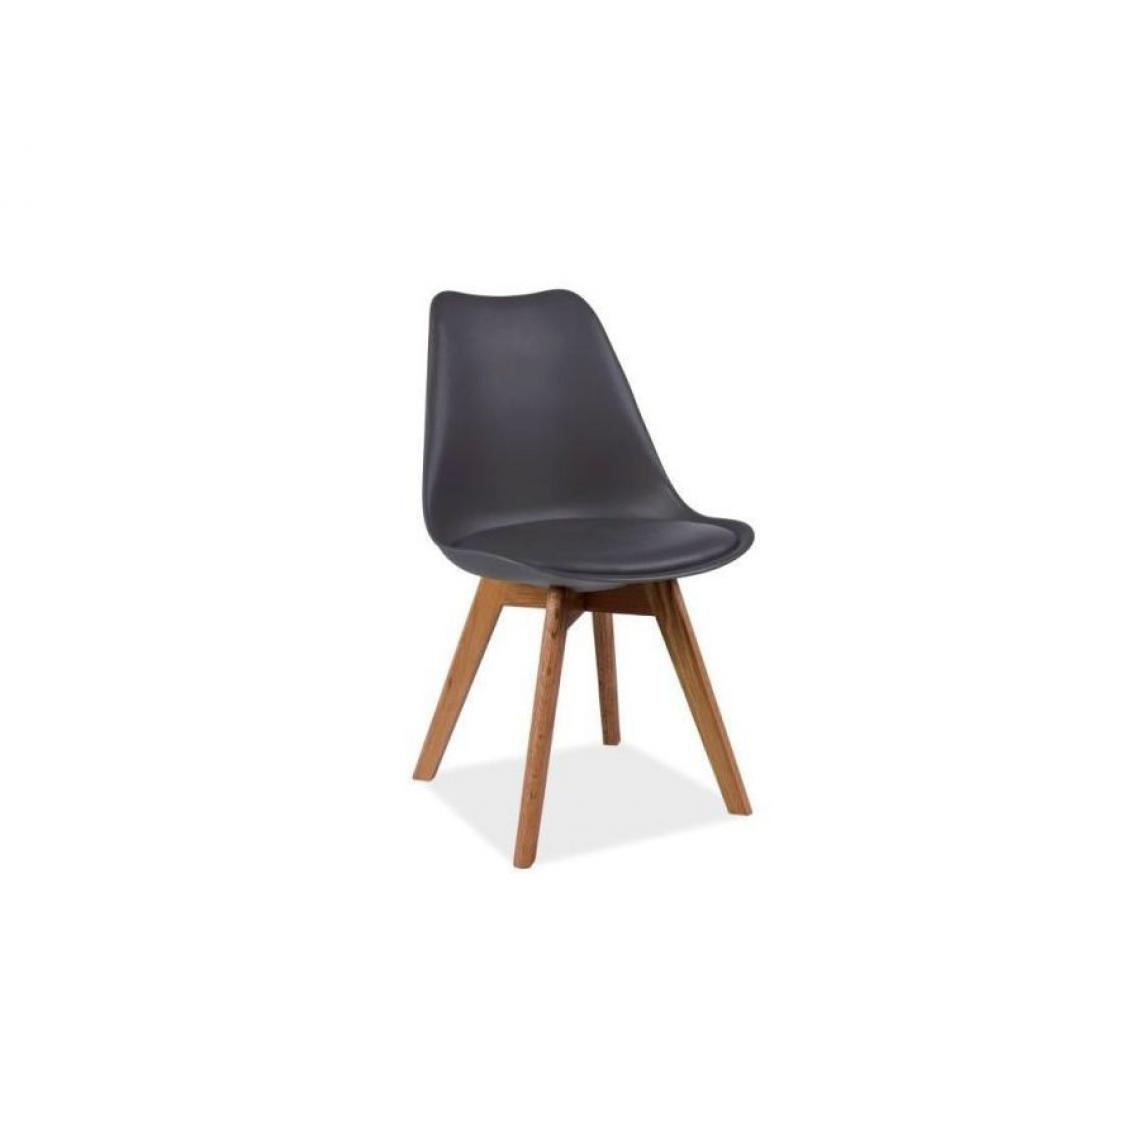 Hucoco - KRIL | Chaise style scandinave salle à manger salon bureau | 83x49x43 cm | PP + similicuir + piétement bois | Chaise moderne - Gris - Chaises